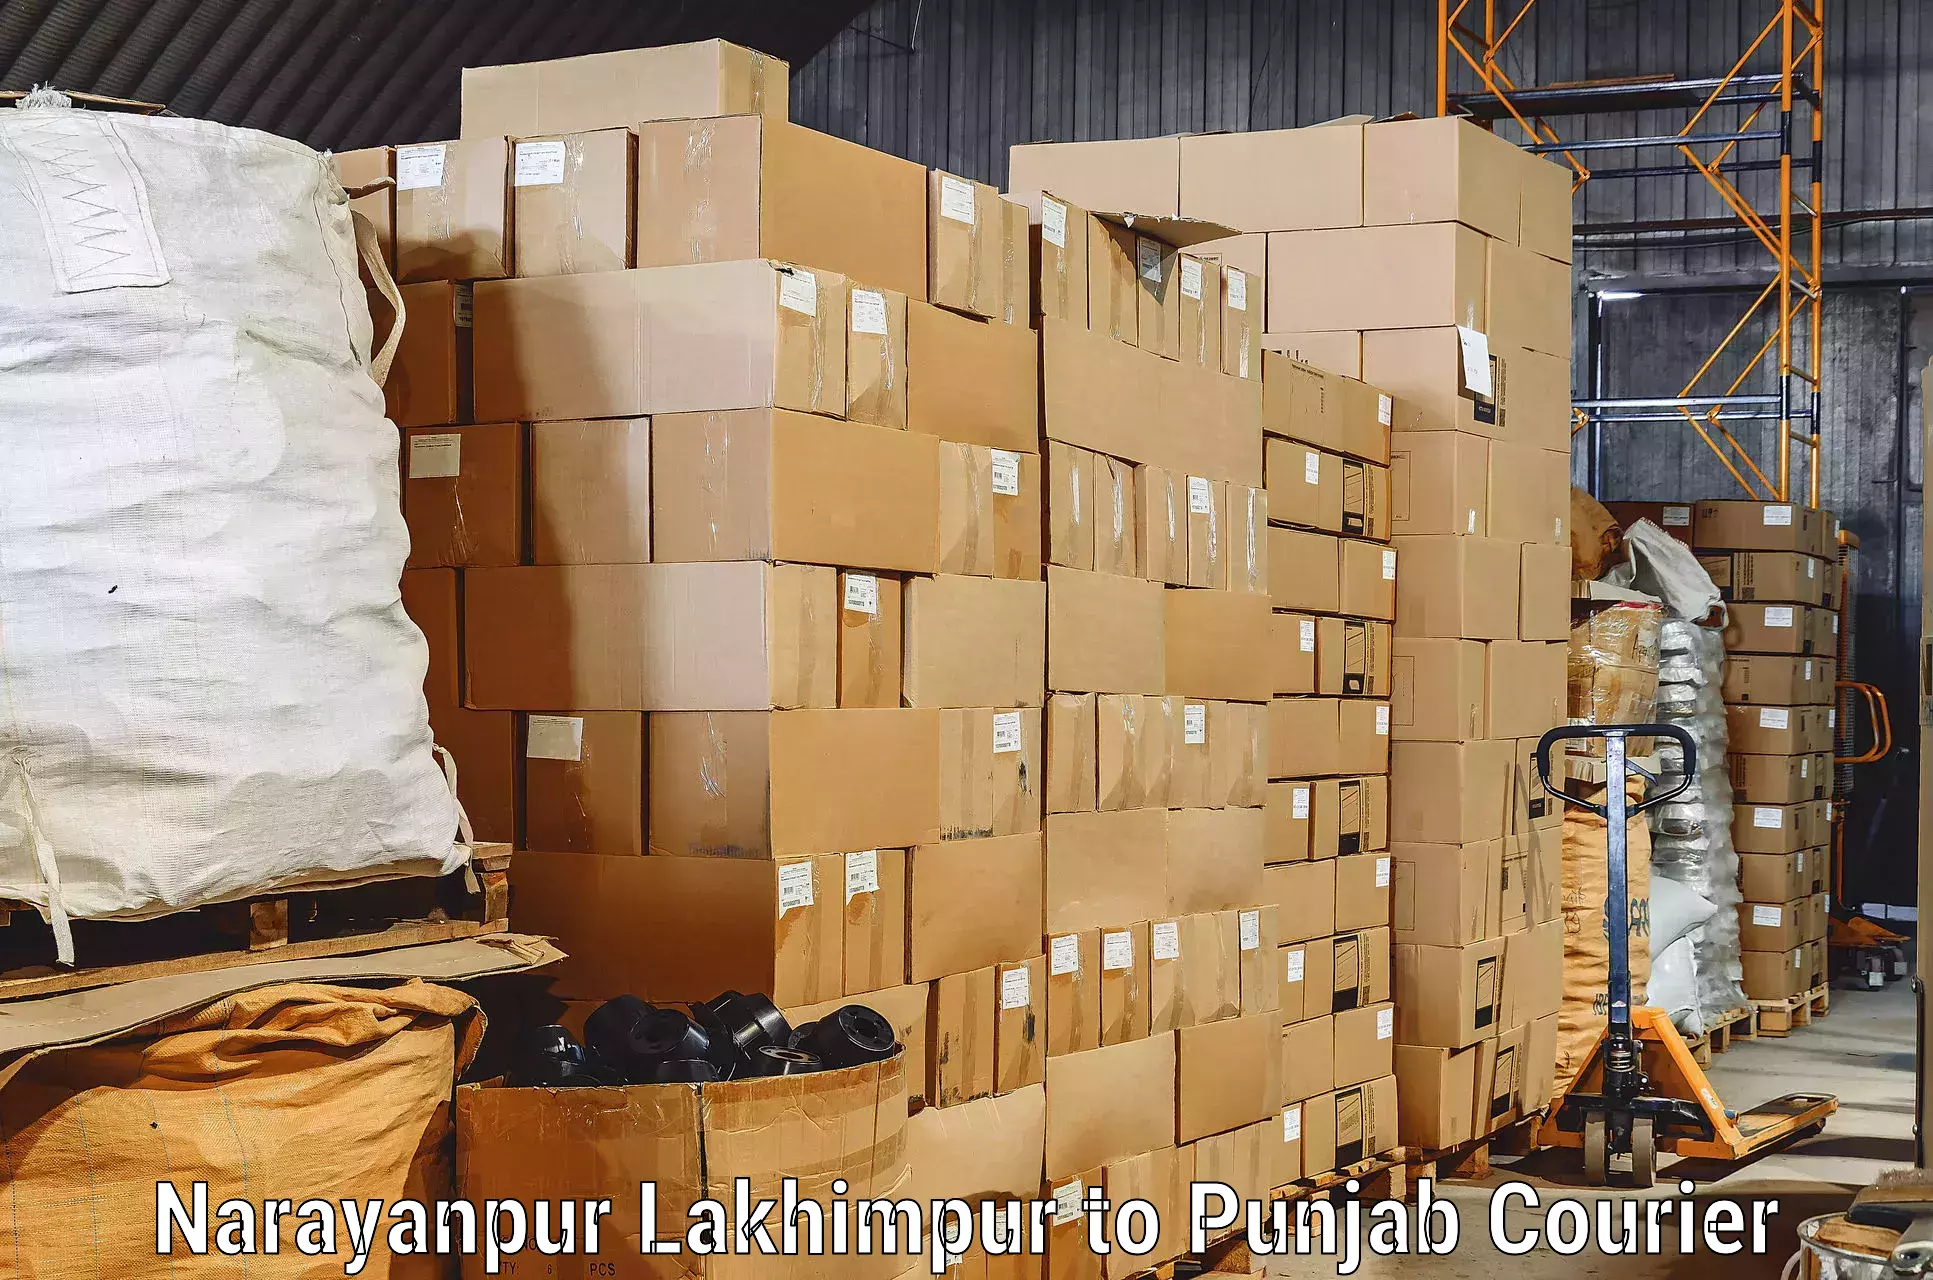 Trusted furniture transport Narayanpur Lakhimpur to Zirakpur